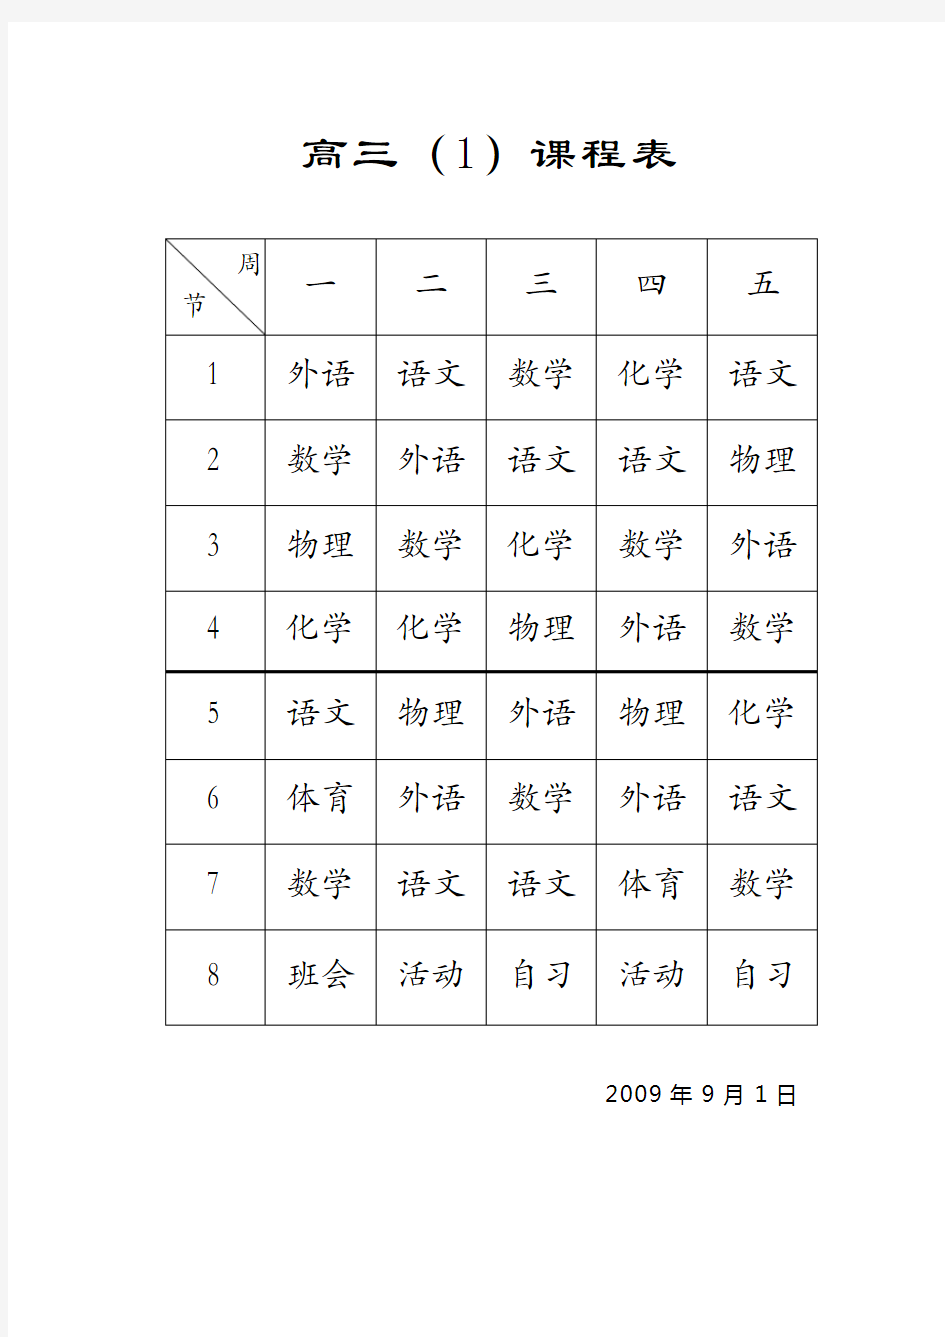 高三(1)课程表.